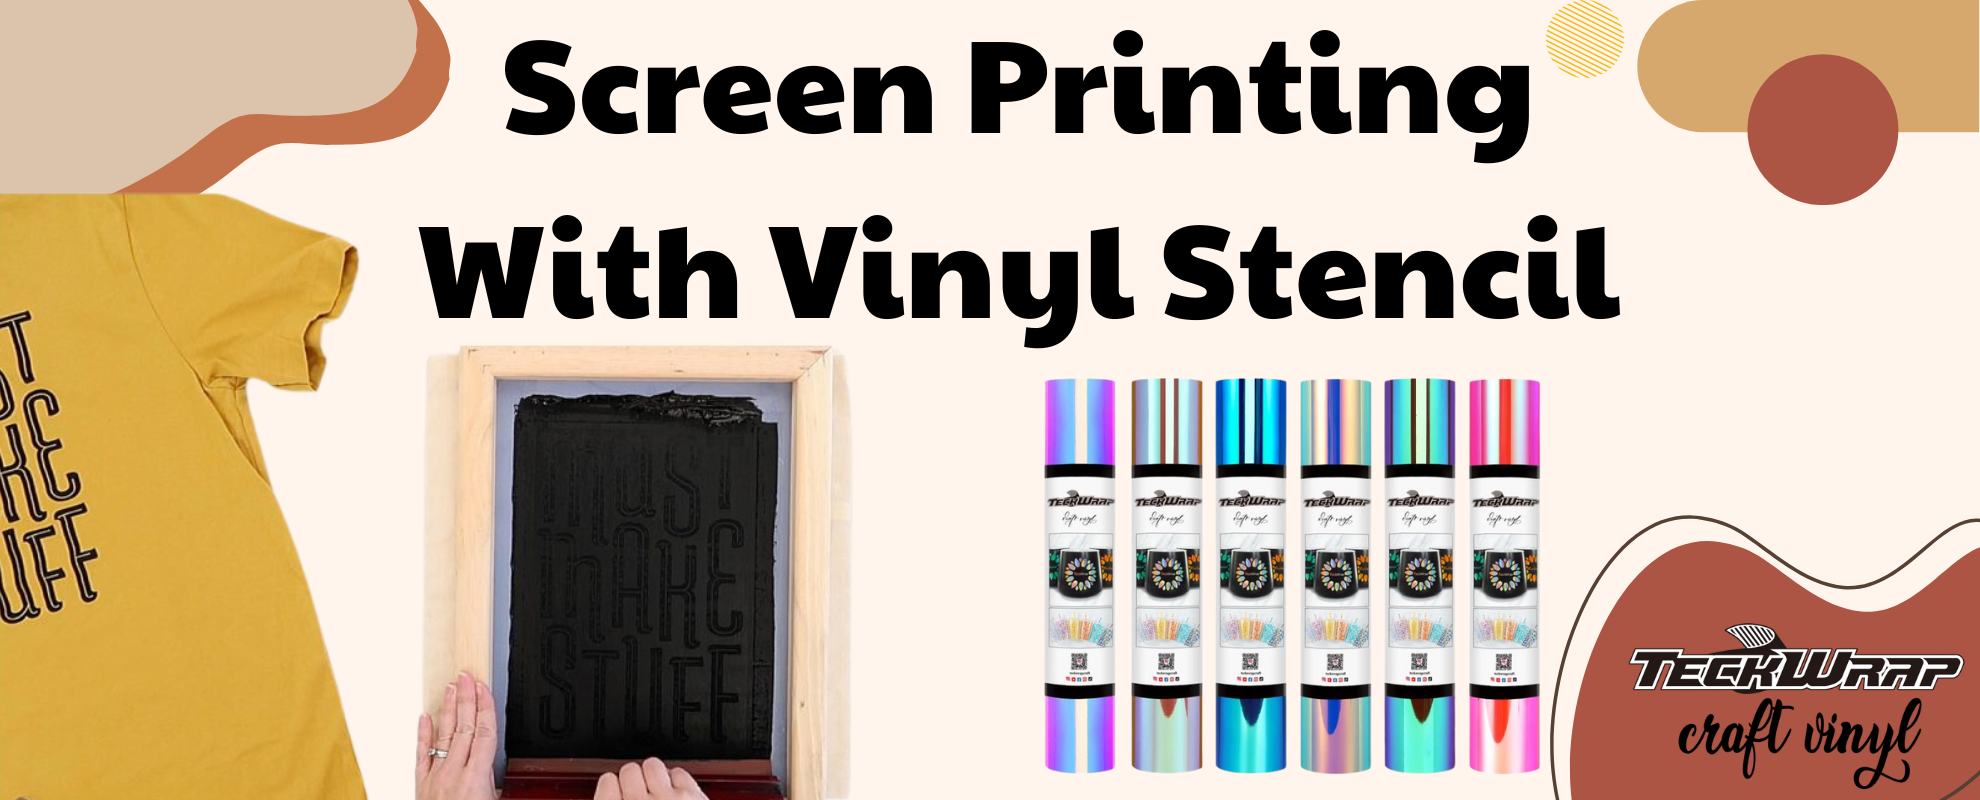 Screen Printing With Vinyl Stencil.png__PID:69c52aae-80d4-4fdb-829d-996f1c70f0f9